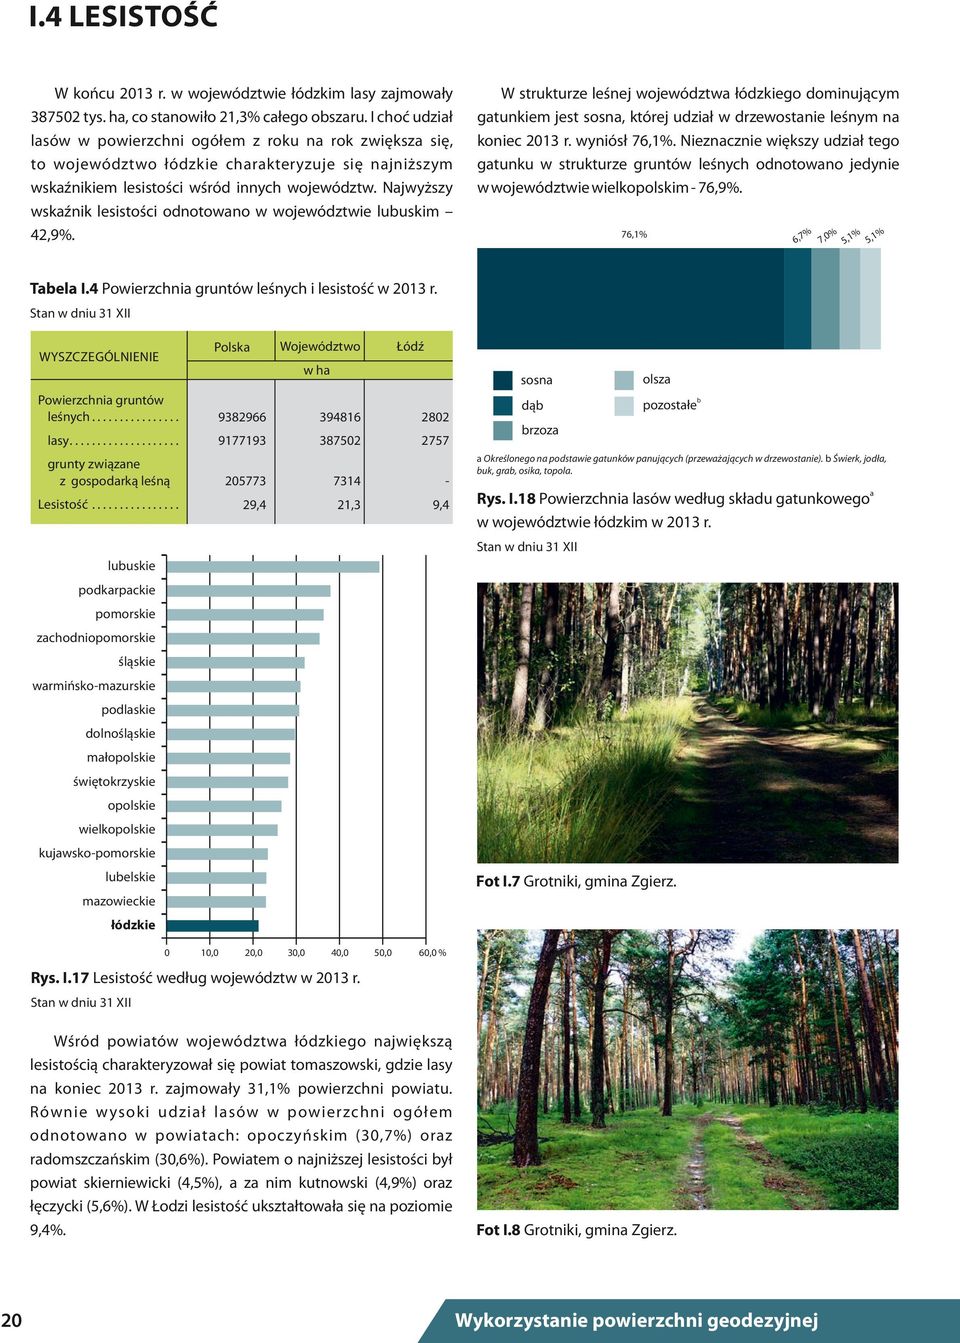 W strukturze leśnej województwa łódzkiego dominującym gatunkiem jest sosna, której udział w drzewostanie leśnym na koniec 2013 r. wyniósł 76,1%.